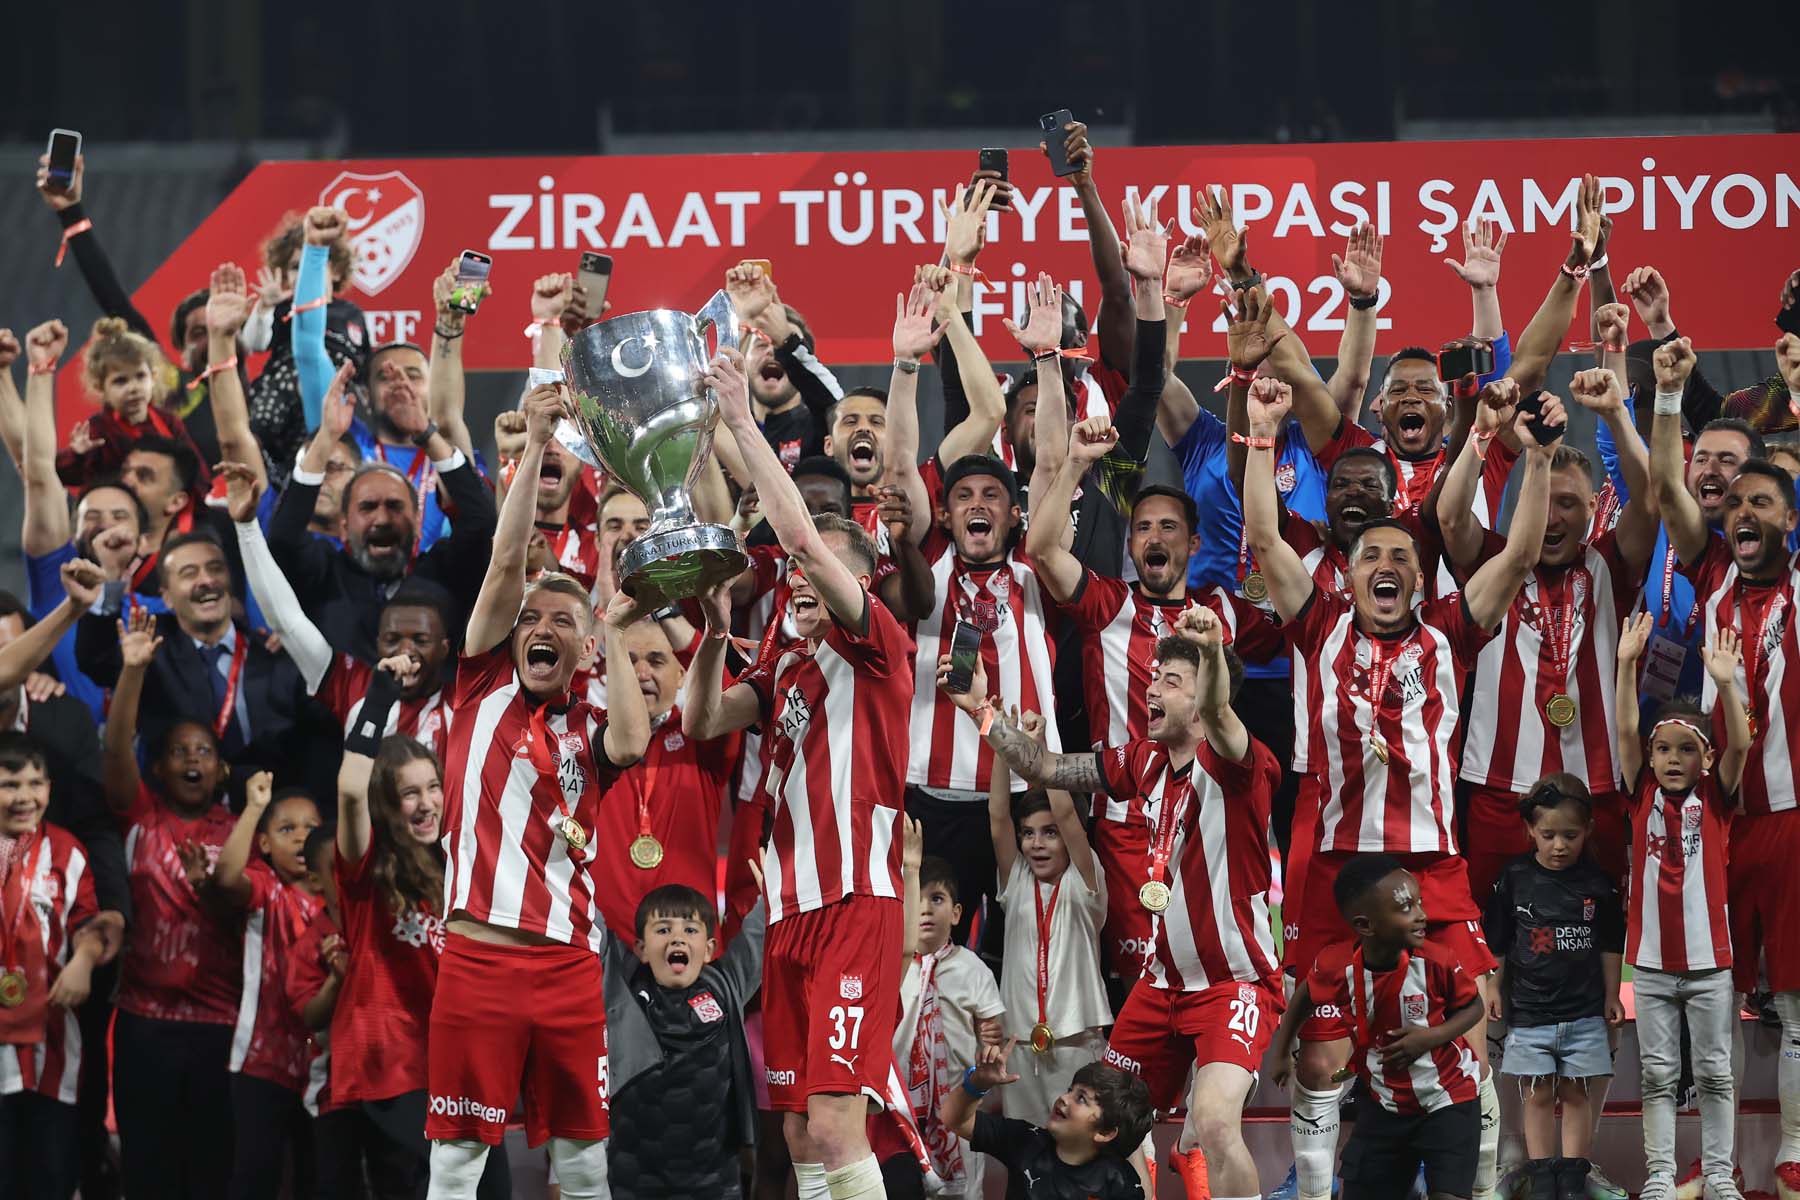 Ziraat Türkiye Kupası final: Sivasspor 3 - 2 Kayserispor | Maç sonucu